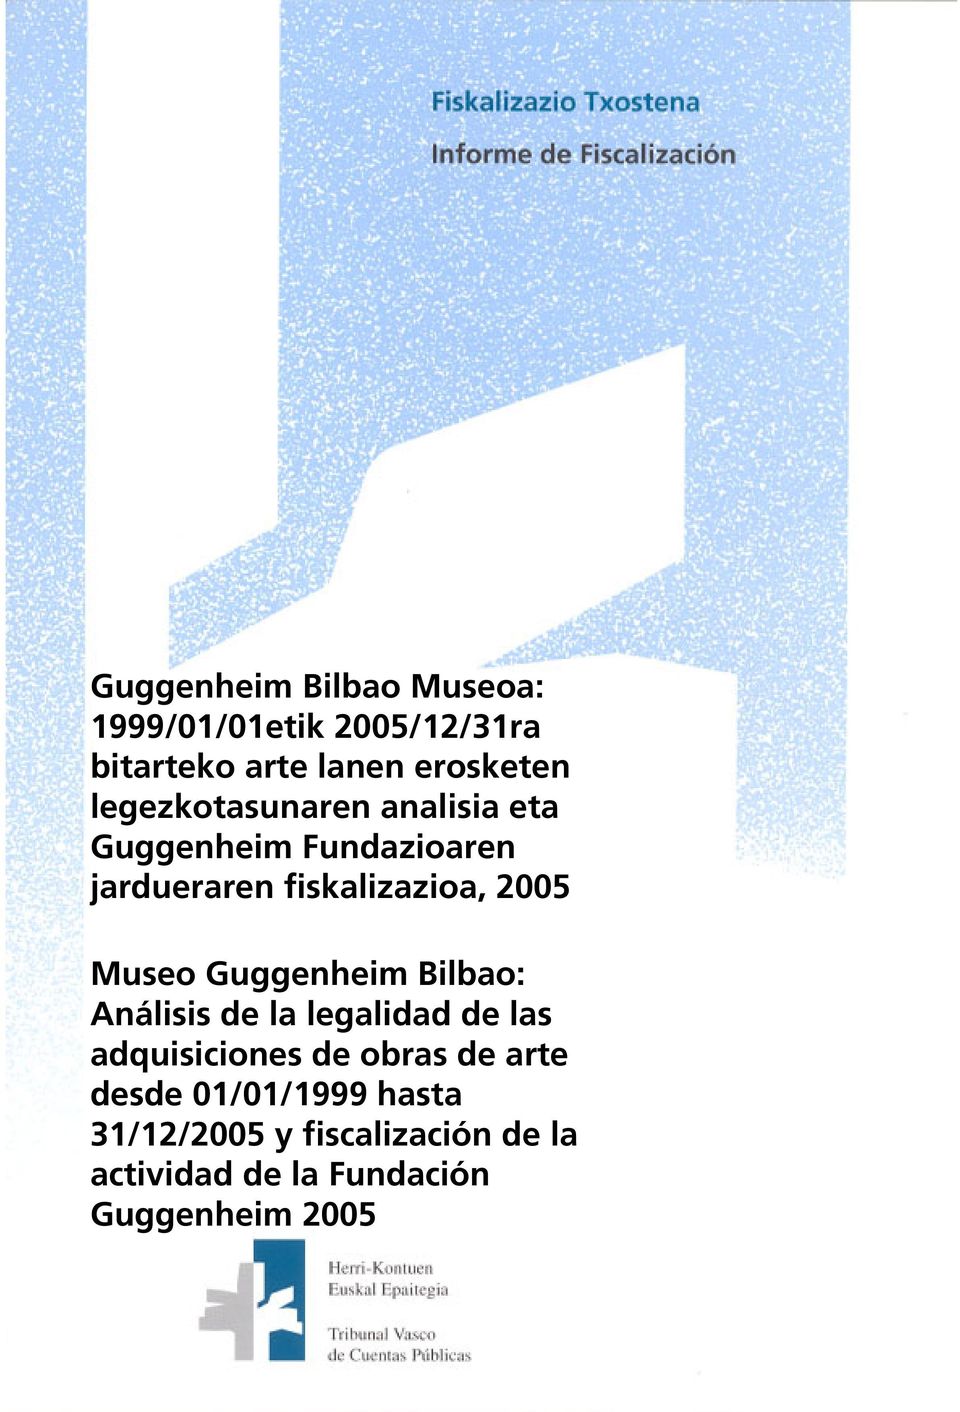 Museo Guggenheim Bilbao: Análisis de la legalidad de las adquisiciones de obras de arte